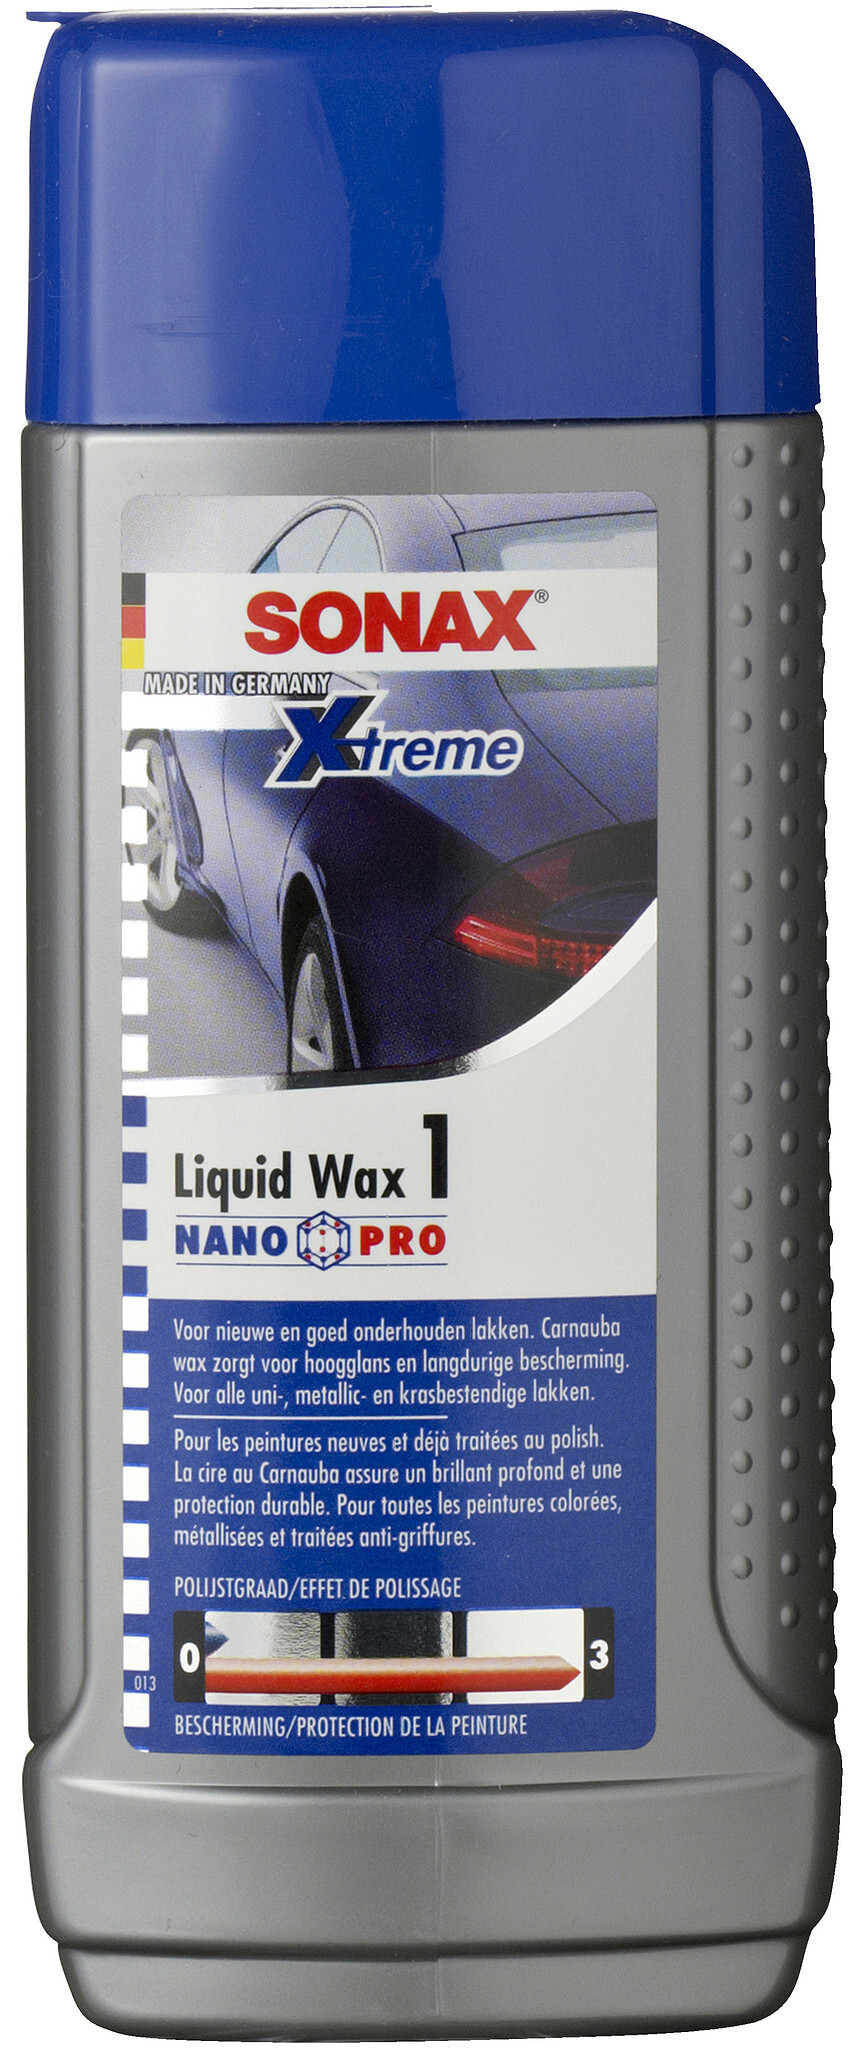 Sonax Xtreme Liquid Wax 1